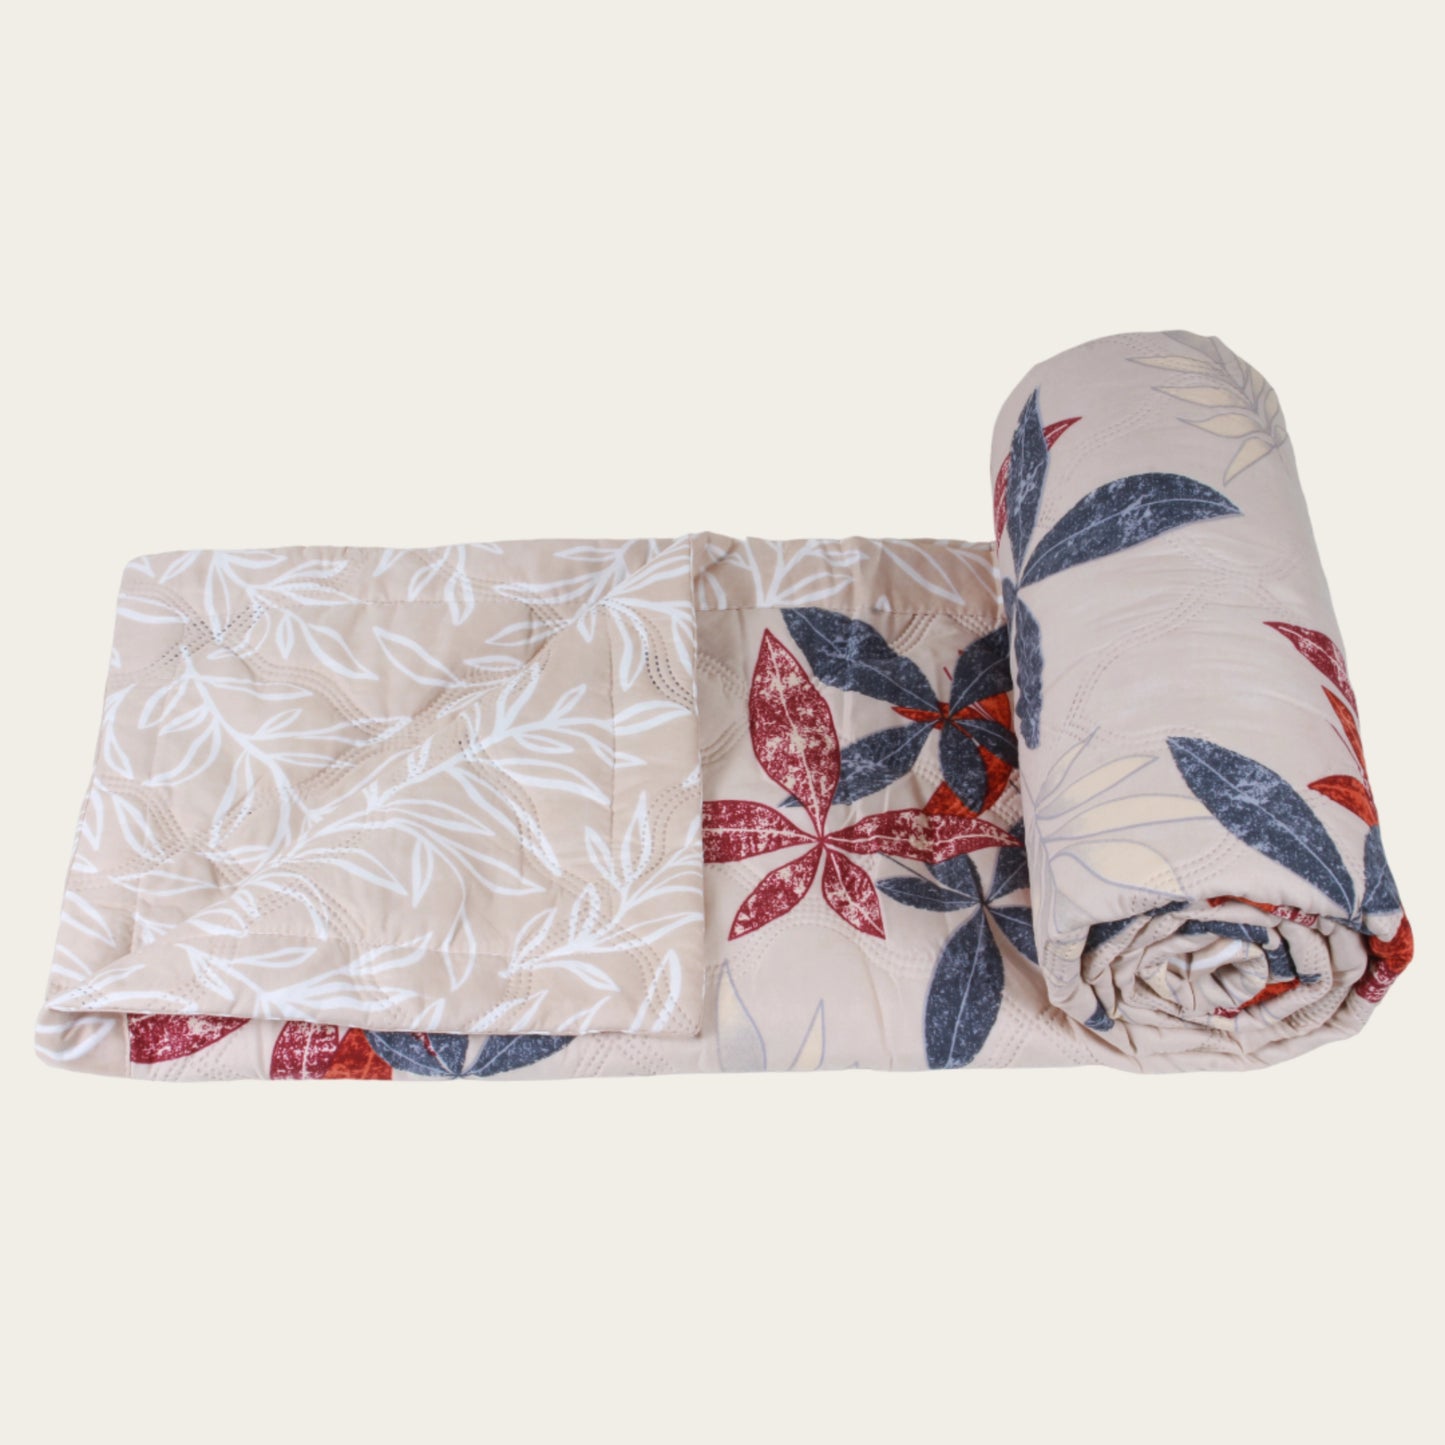 Ivory Botanical Comforter